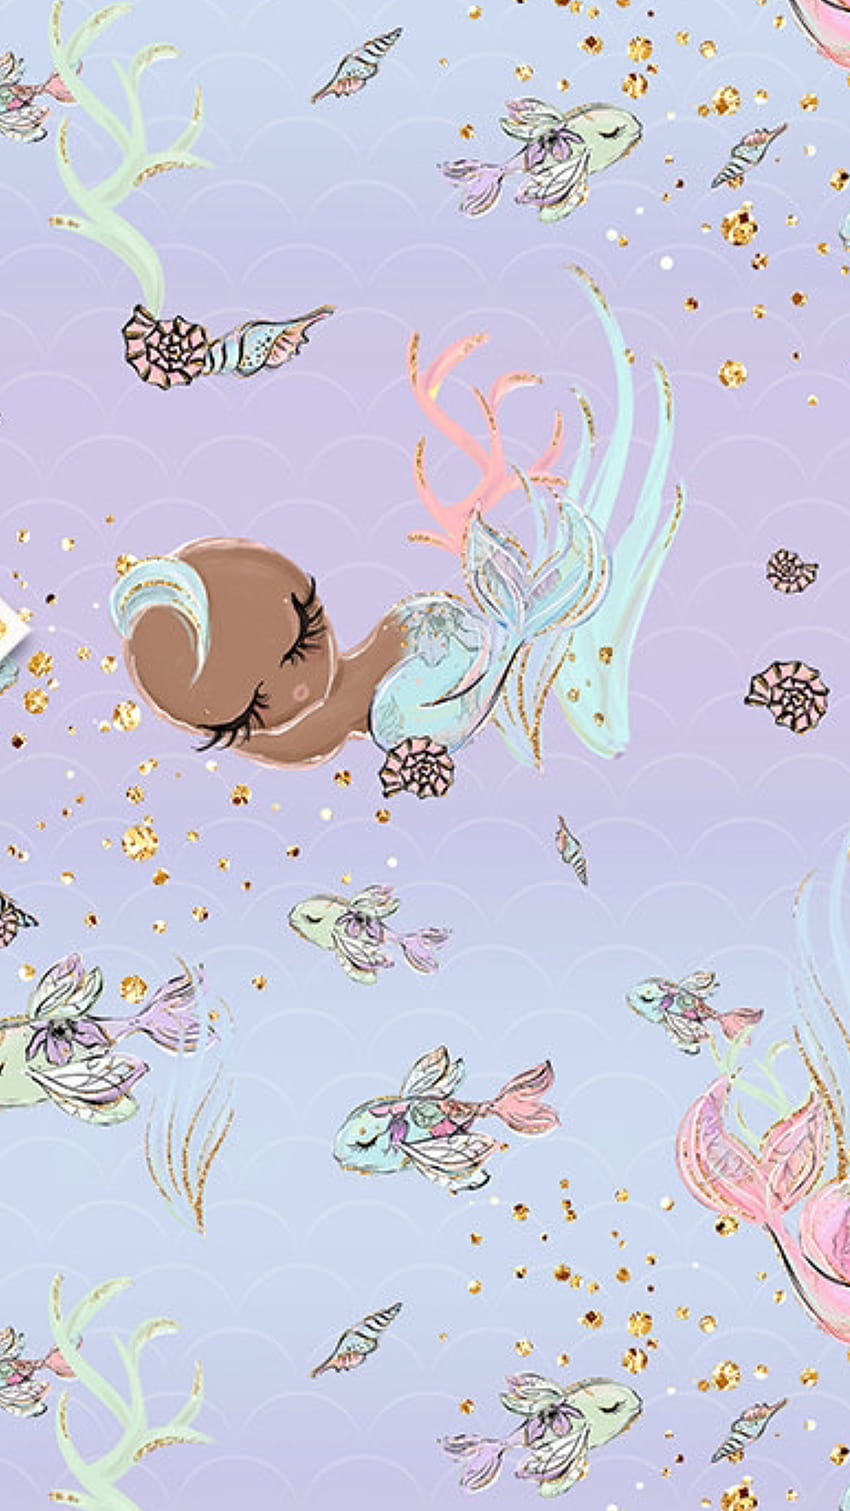 Pin on Sirena Mermaid, baby mermaid HD phone wallpaper